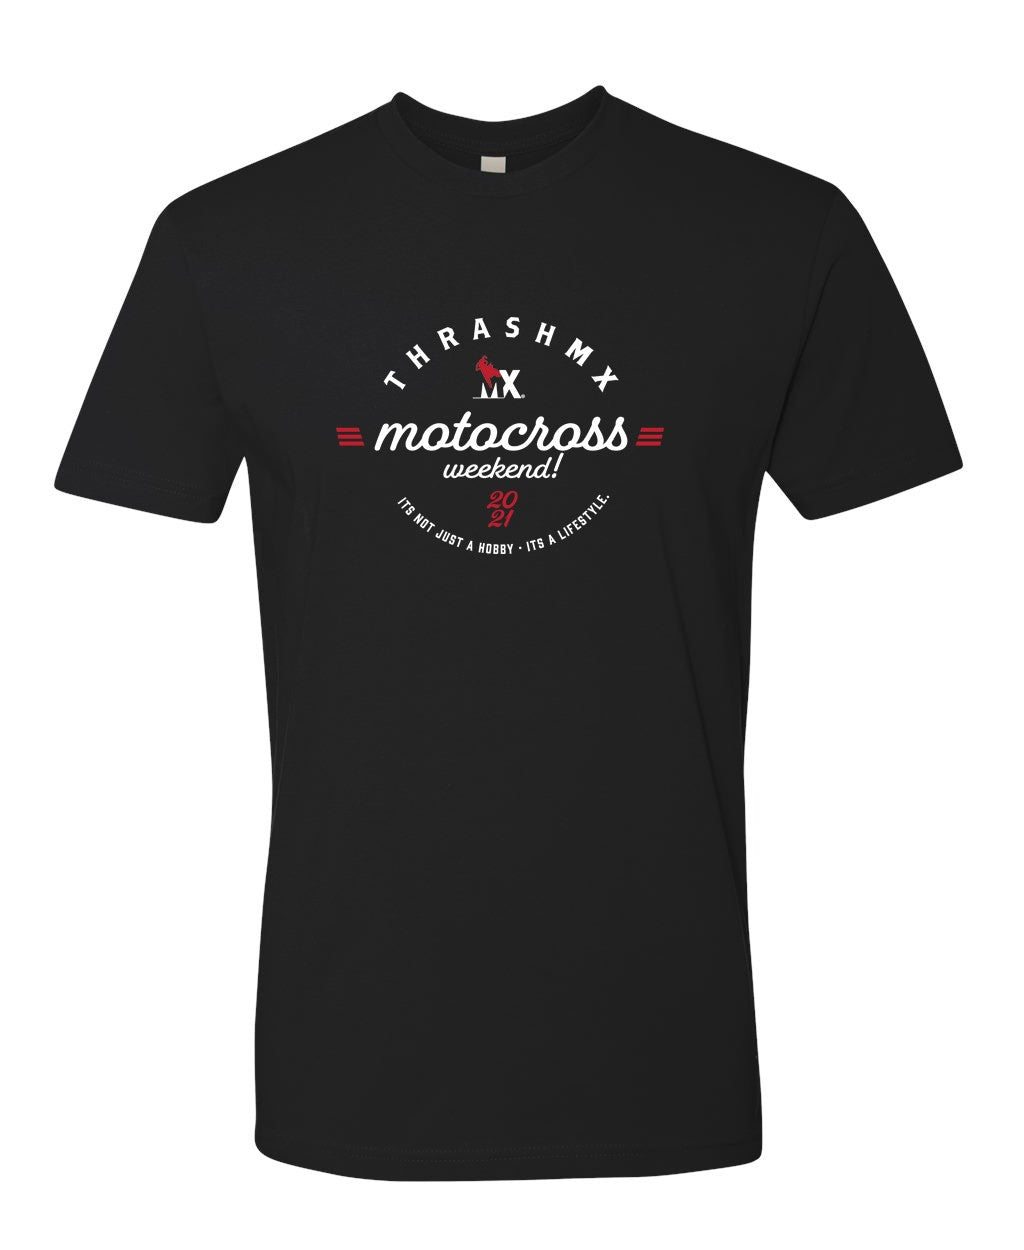 Motocross weekend T-shirt black